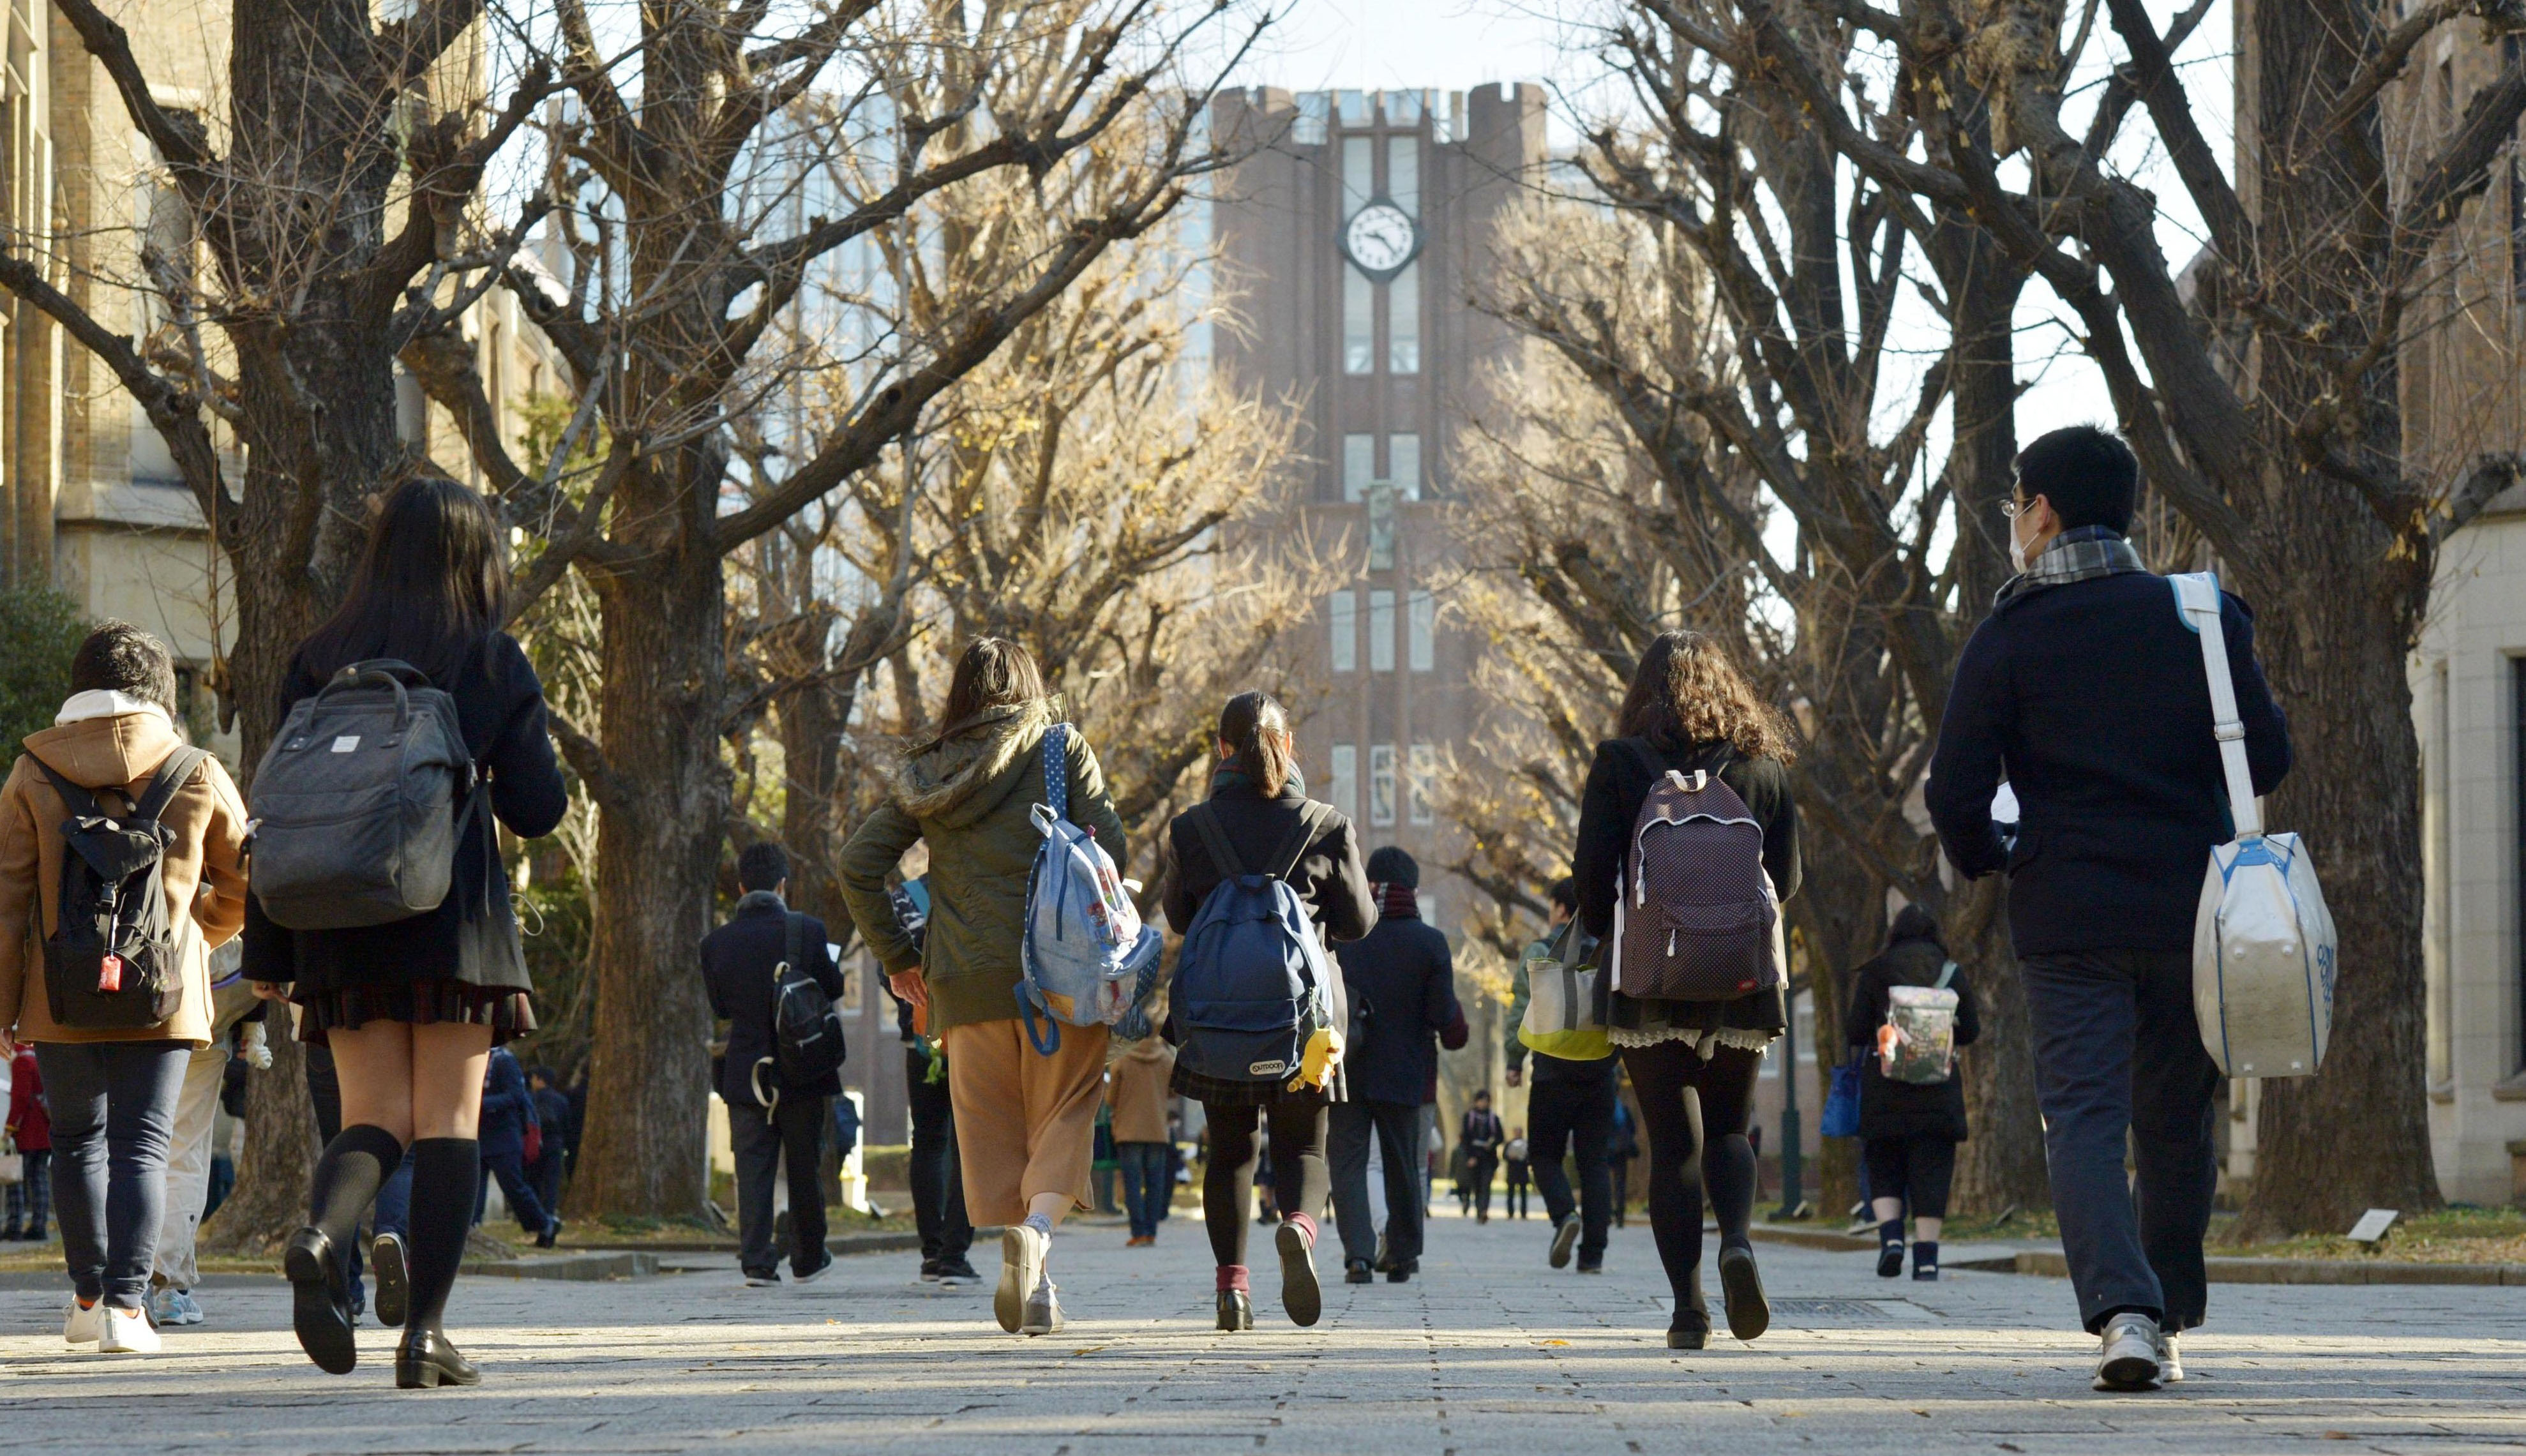 منح الحكومة اليابانية لدراسة الفروع التقنية في اليابان 2018 لطلاب المرحلة الجامعية الأولى